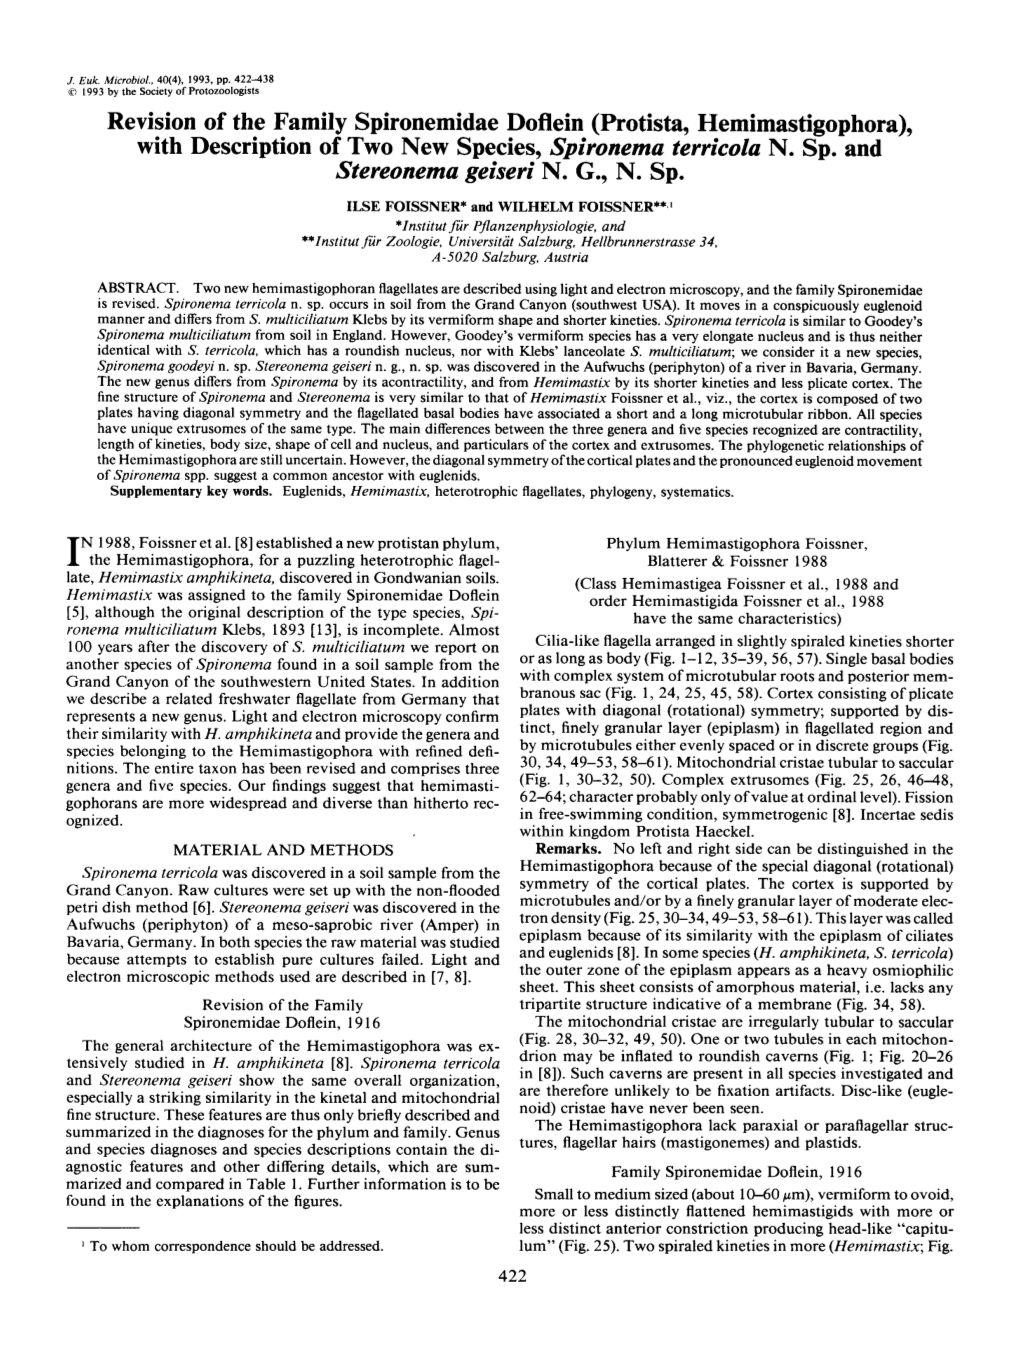 Revision of the Family Spironemidae Doflein (Protista, Hemimastigophora), with Description of Two New Species, Spironema Terrico